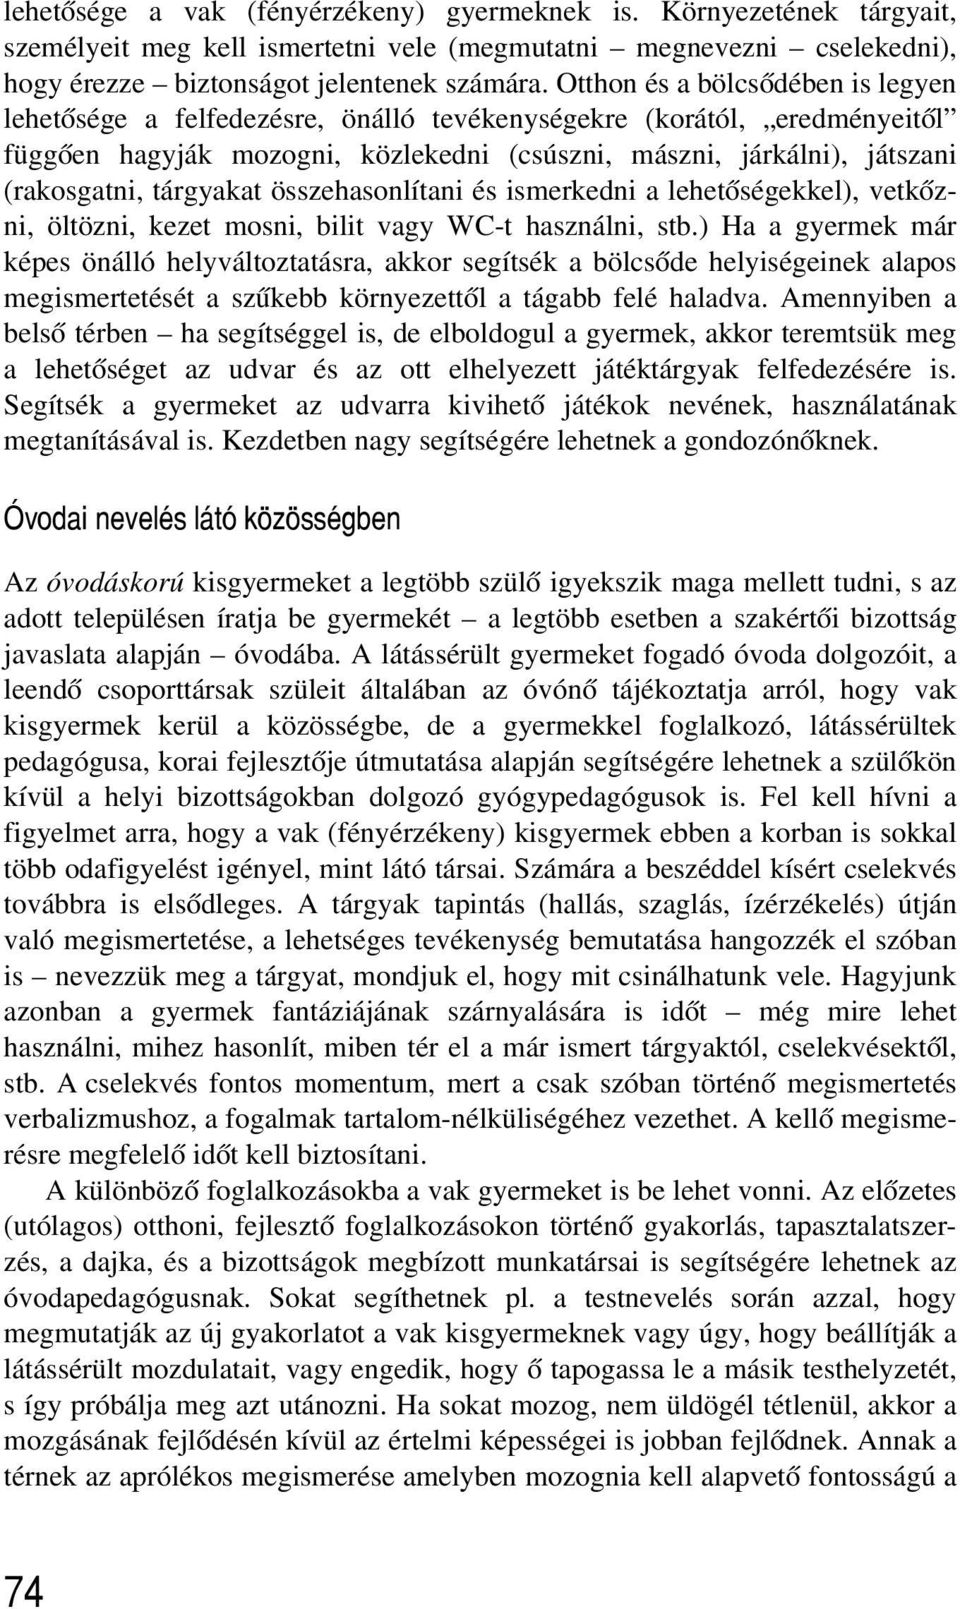 FÖLDINÉ DR. ANGYALOSSY ZSUZSA - PDF Ingyenes letöltés